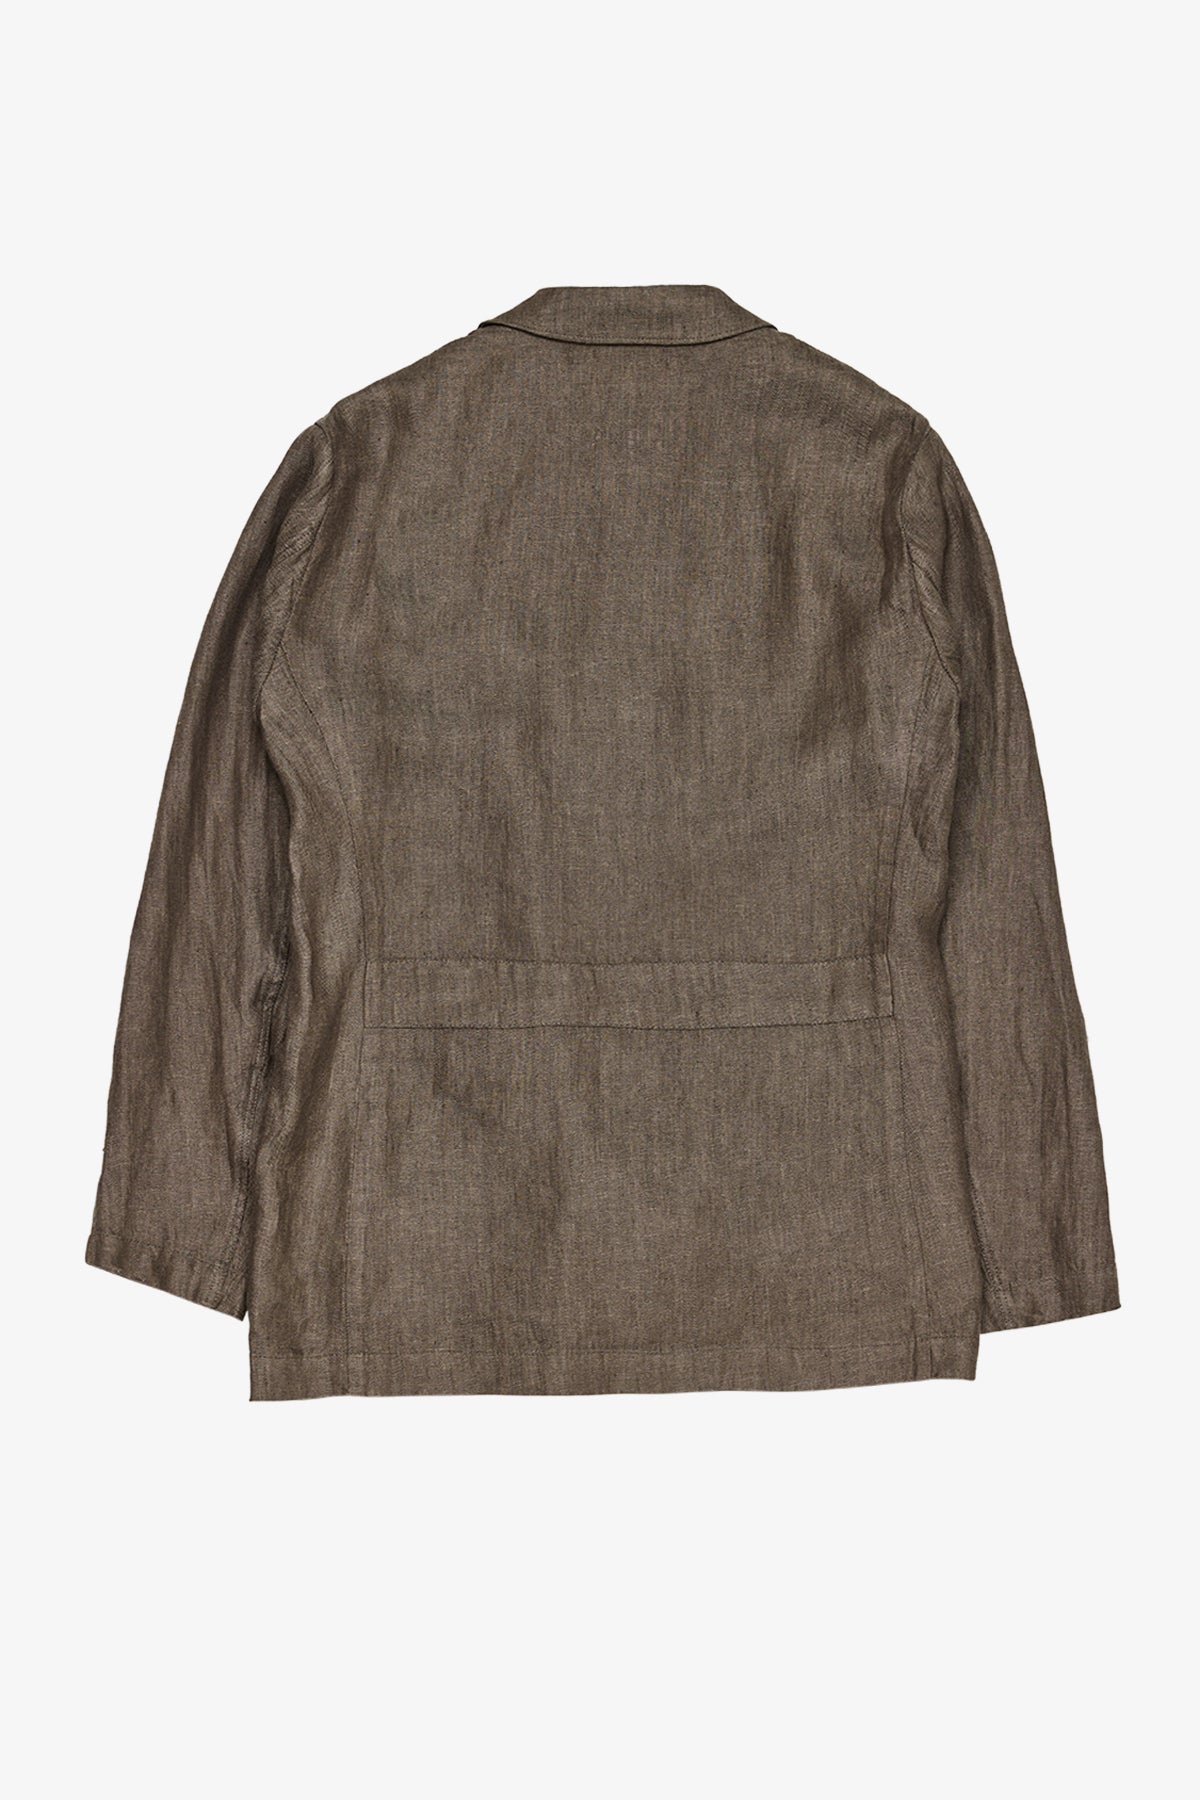 Carter - Brown Shirt Jacket